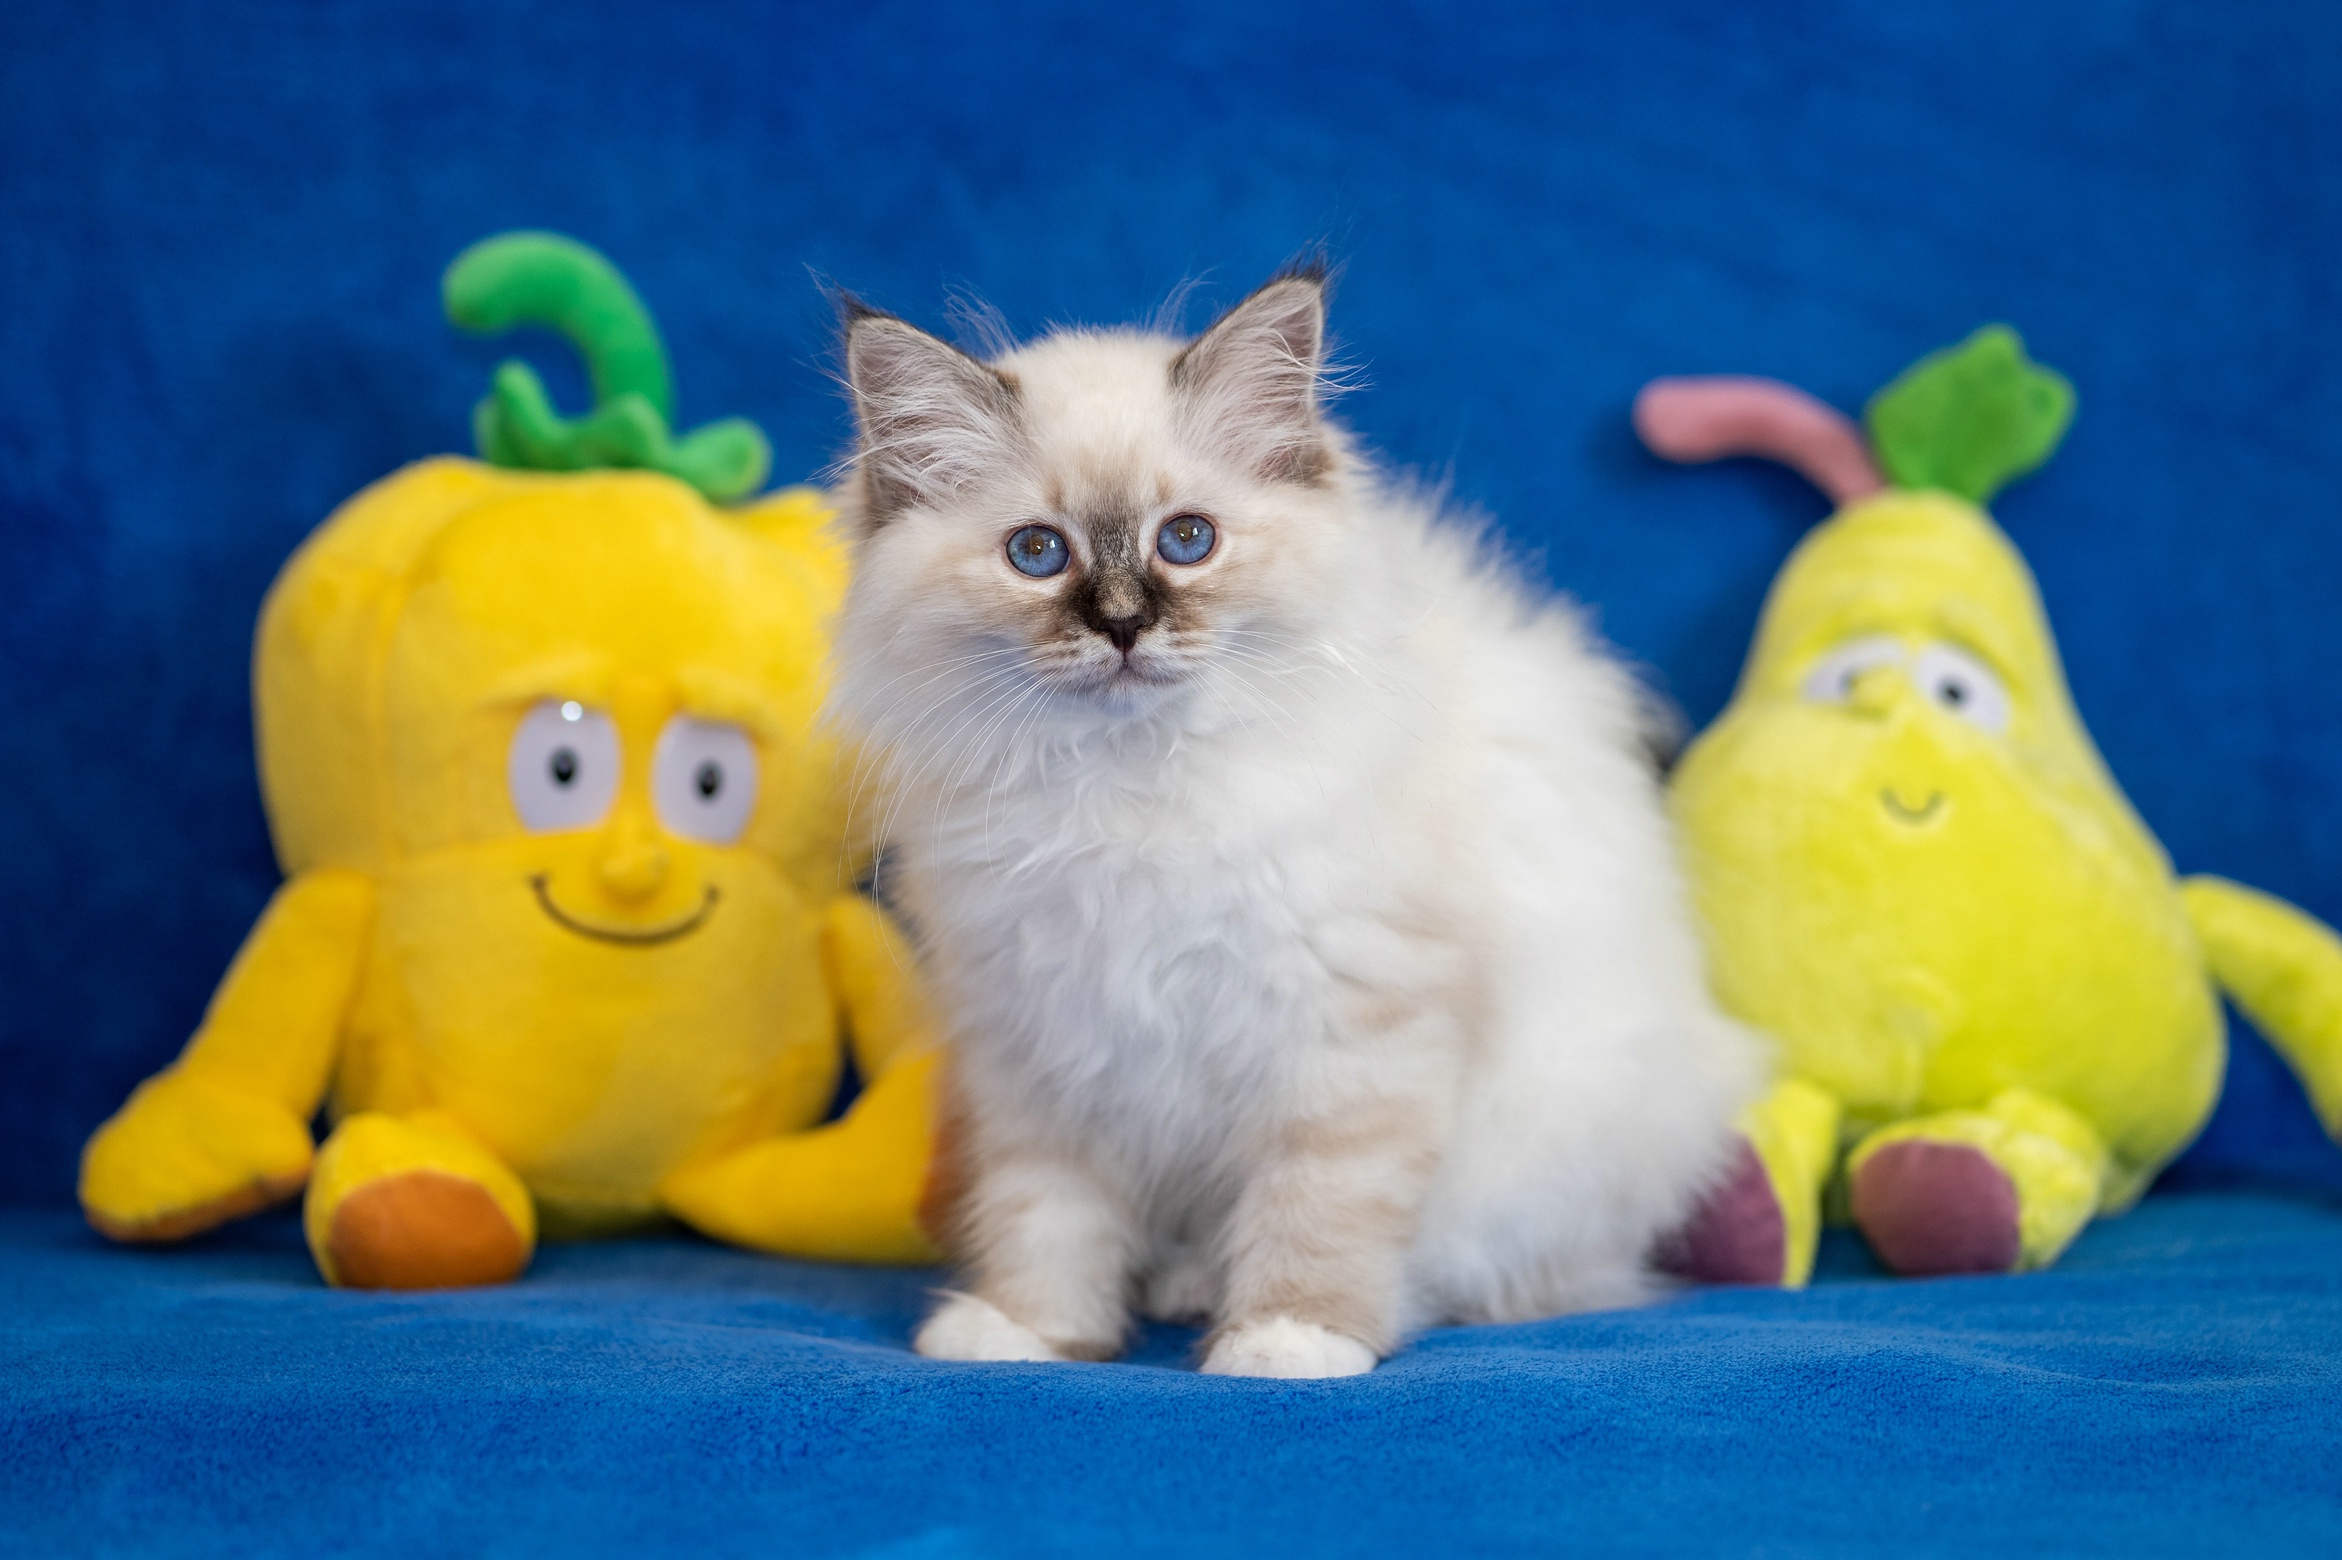 Обои для рабочего стола мягкие игрушки желтые. Ткань с котятами. Шоу с желтыми игрушками. Покажи фотографию желтого игрушечного кота.